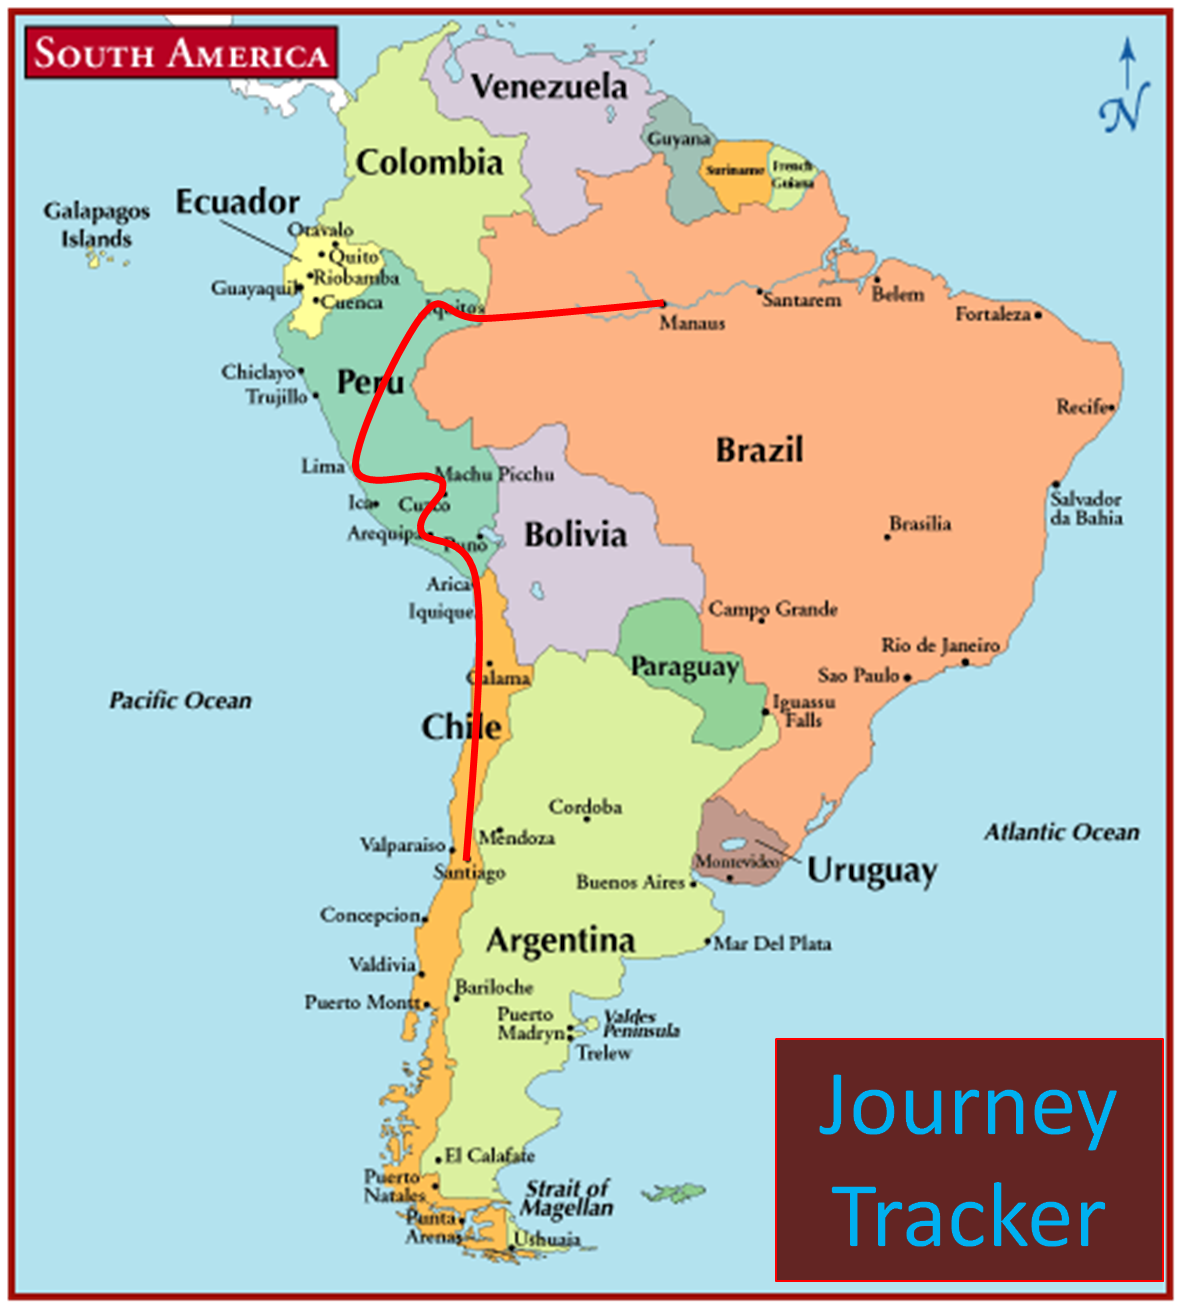 Парагвай и Уругвай на карте Южной Америки. Монтевидео на карте Южной Америки.